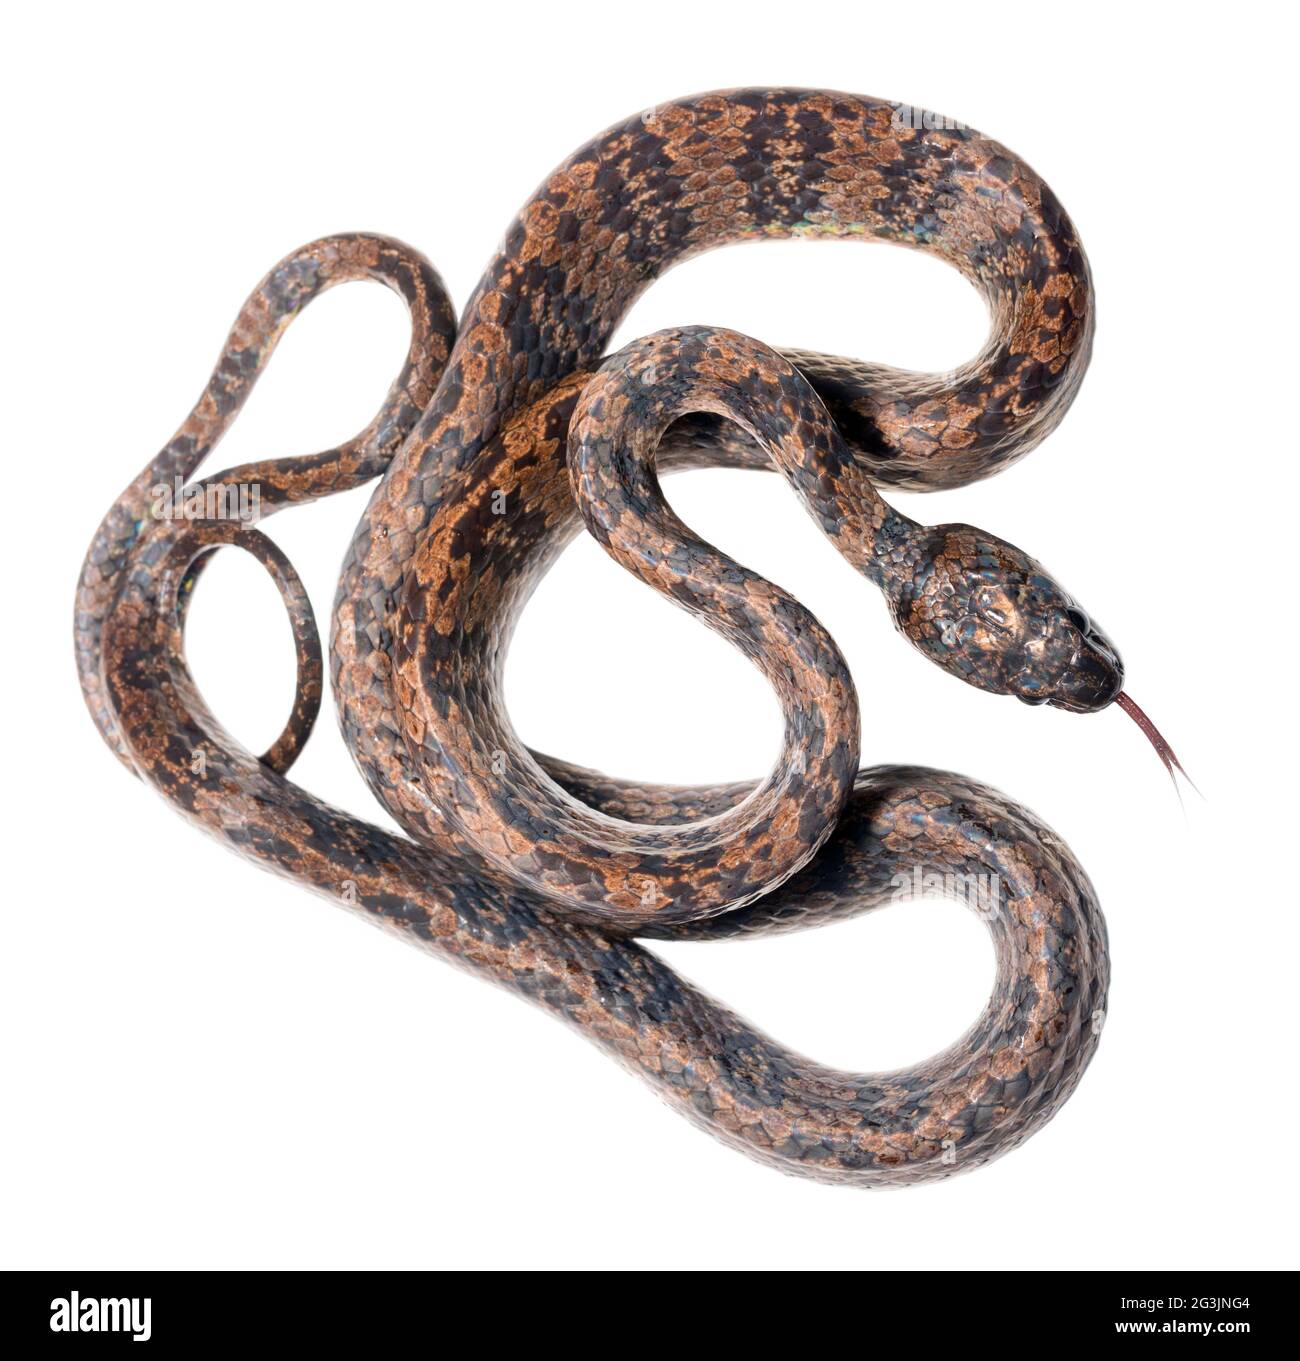 Elegante serpente di serpente (Dipsas elegans) dalla foresta pluviale montana, provincia di Imbabura, Ecuador occidentale Foto Stock